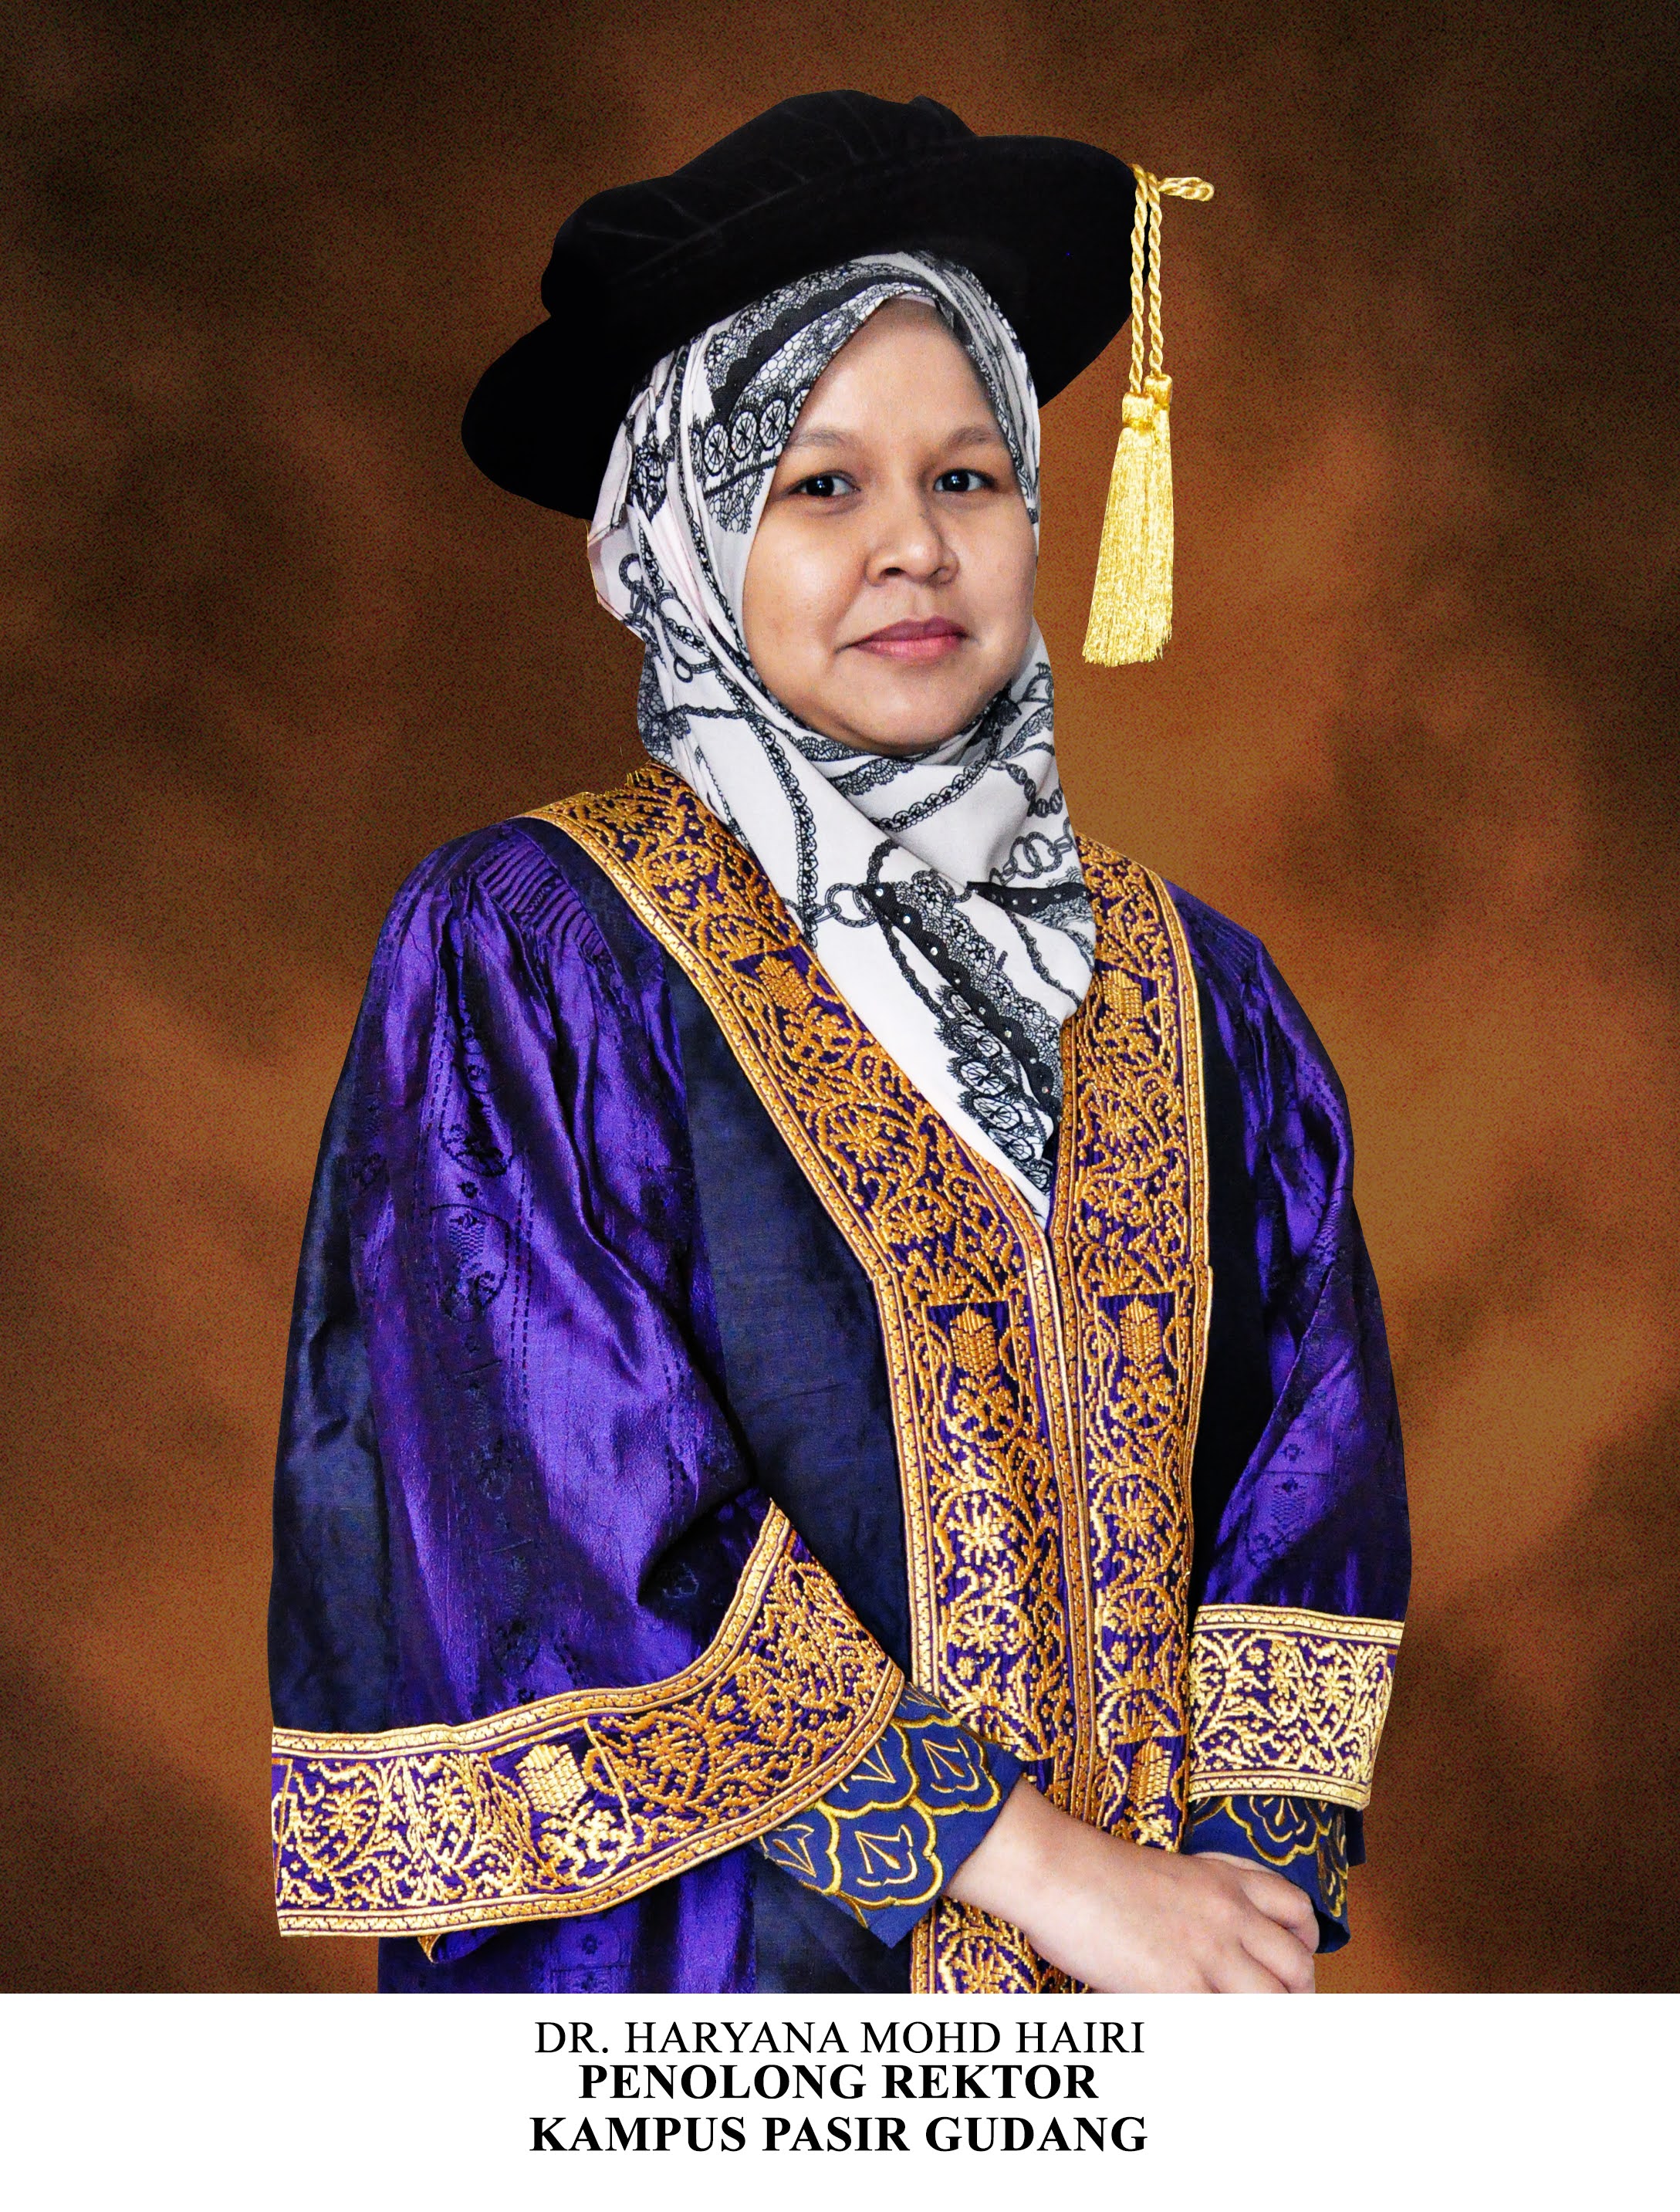 Dr. Haryana Mohd Hairi